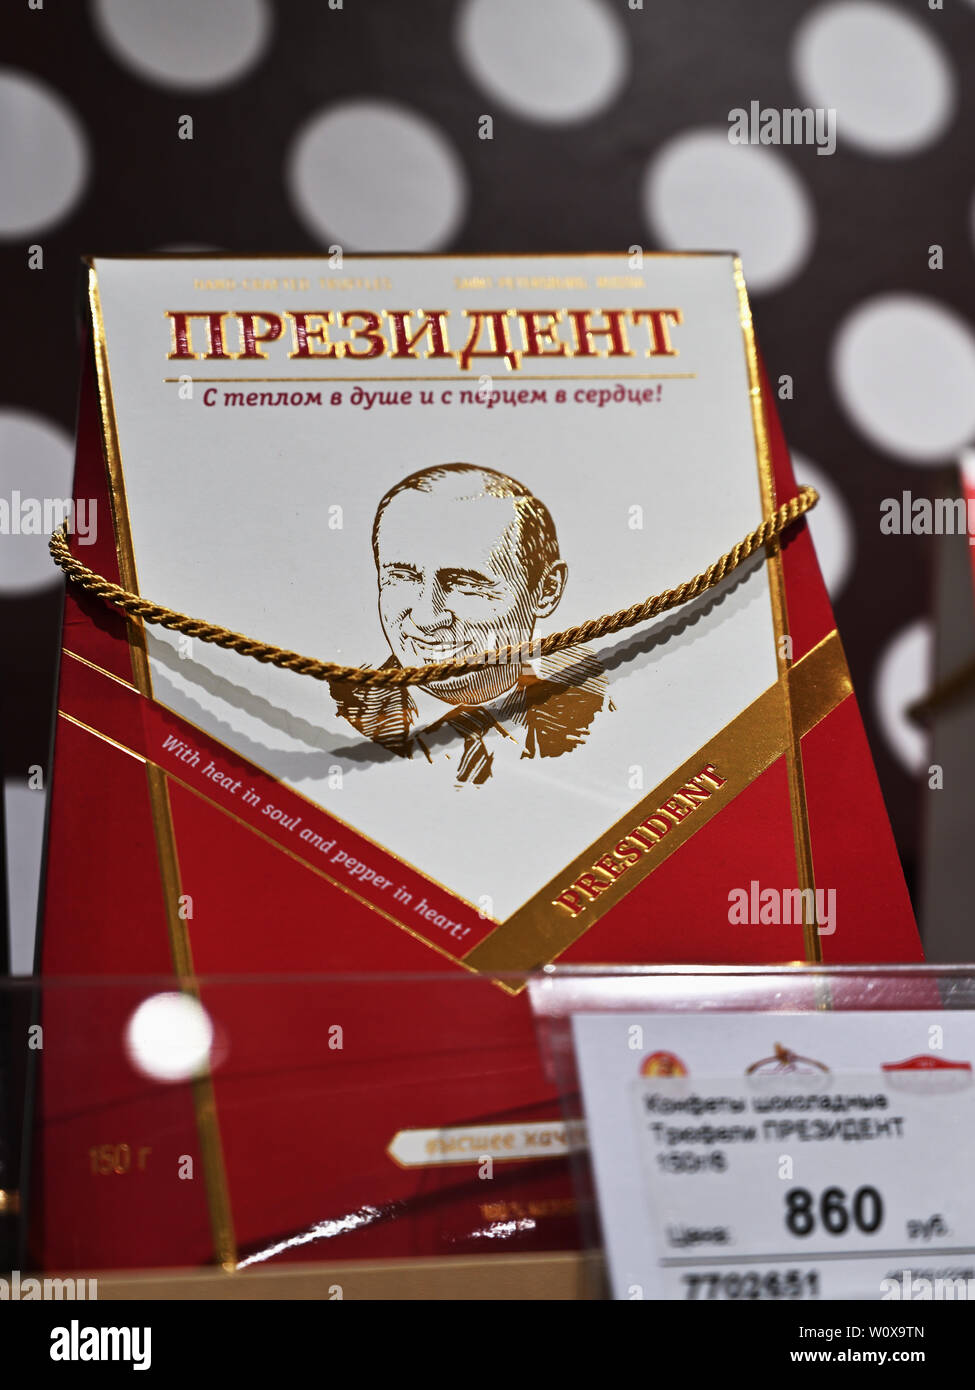 Russische Schokolade Süßigkeiten Box mit Wladimir Putin Portrait auf der  Candy shop Regal Stockfotografie - Alamy